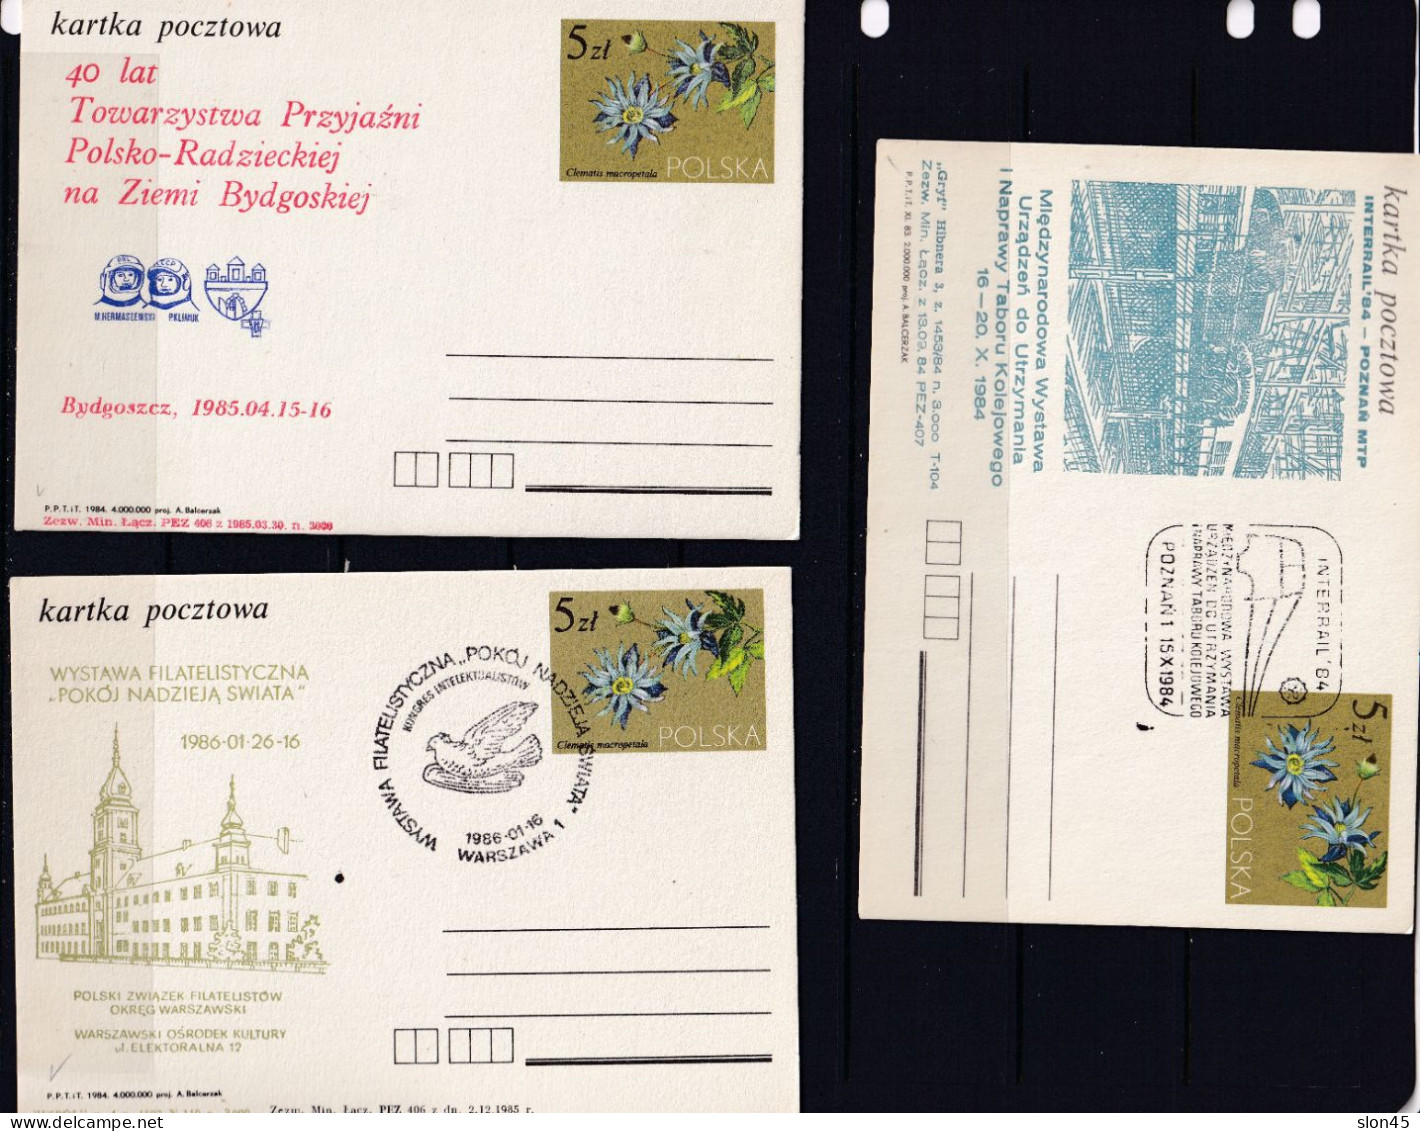 Poland 10 Postal Stationary Cards Special Cancel 5 Zl 16115 - Poland